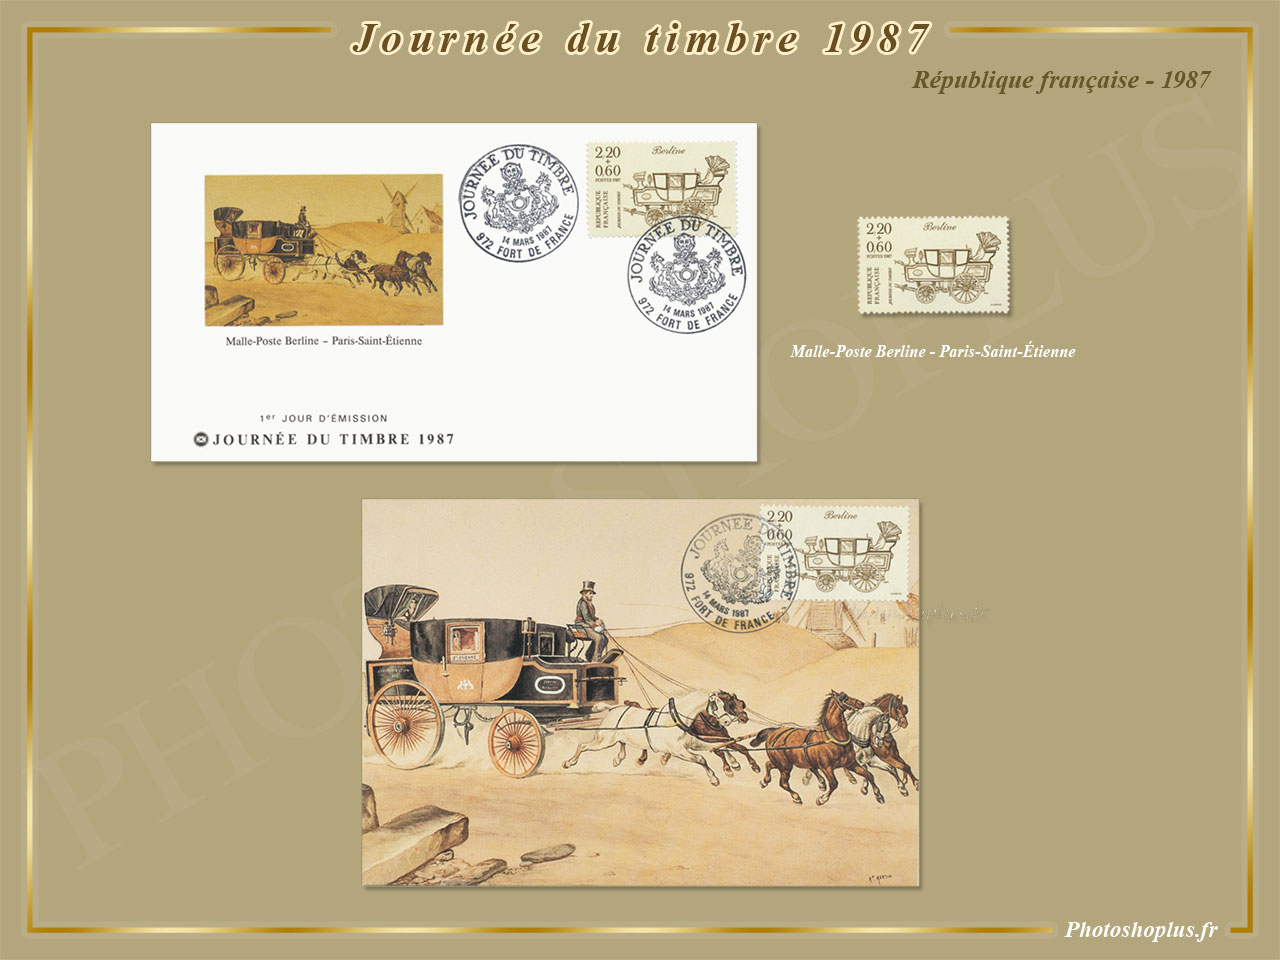 Journée du timbre 1987